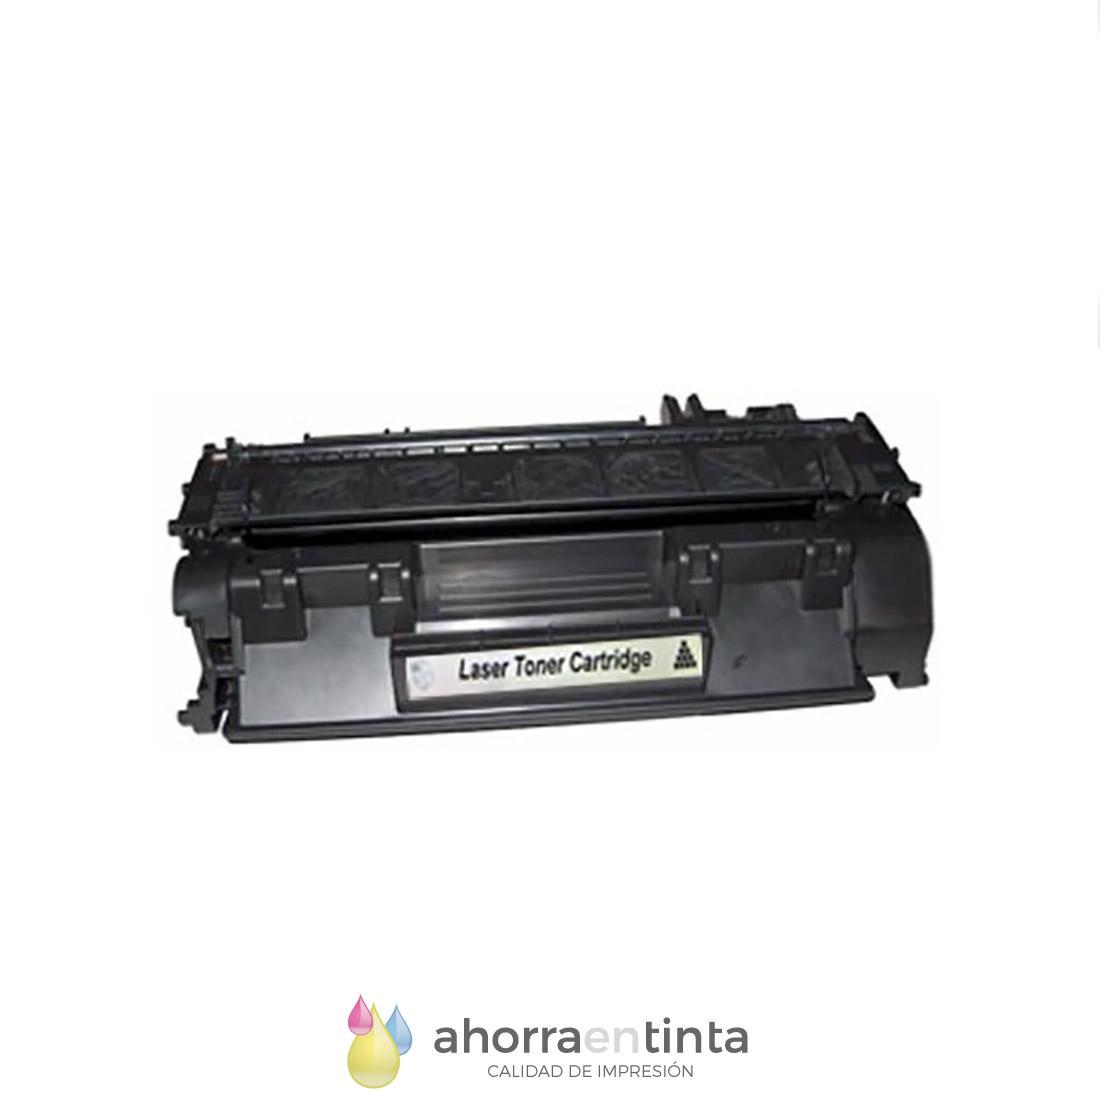 pesadilla Tranvía agrio HP CF280X / 80X Cartucho Reciclado de tóner para impresoras Hp LaserJet Pro  400 M401A